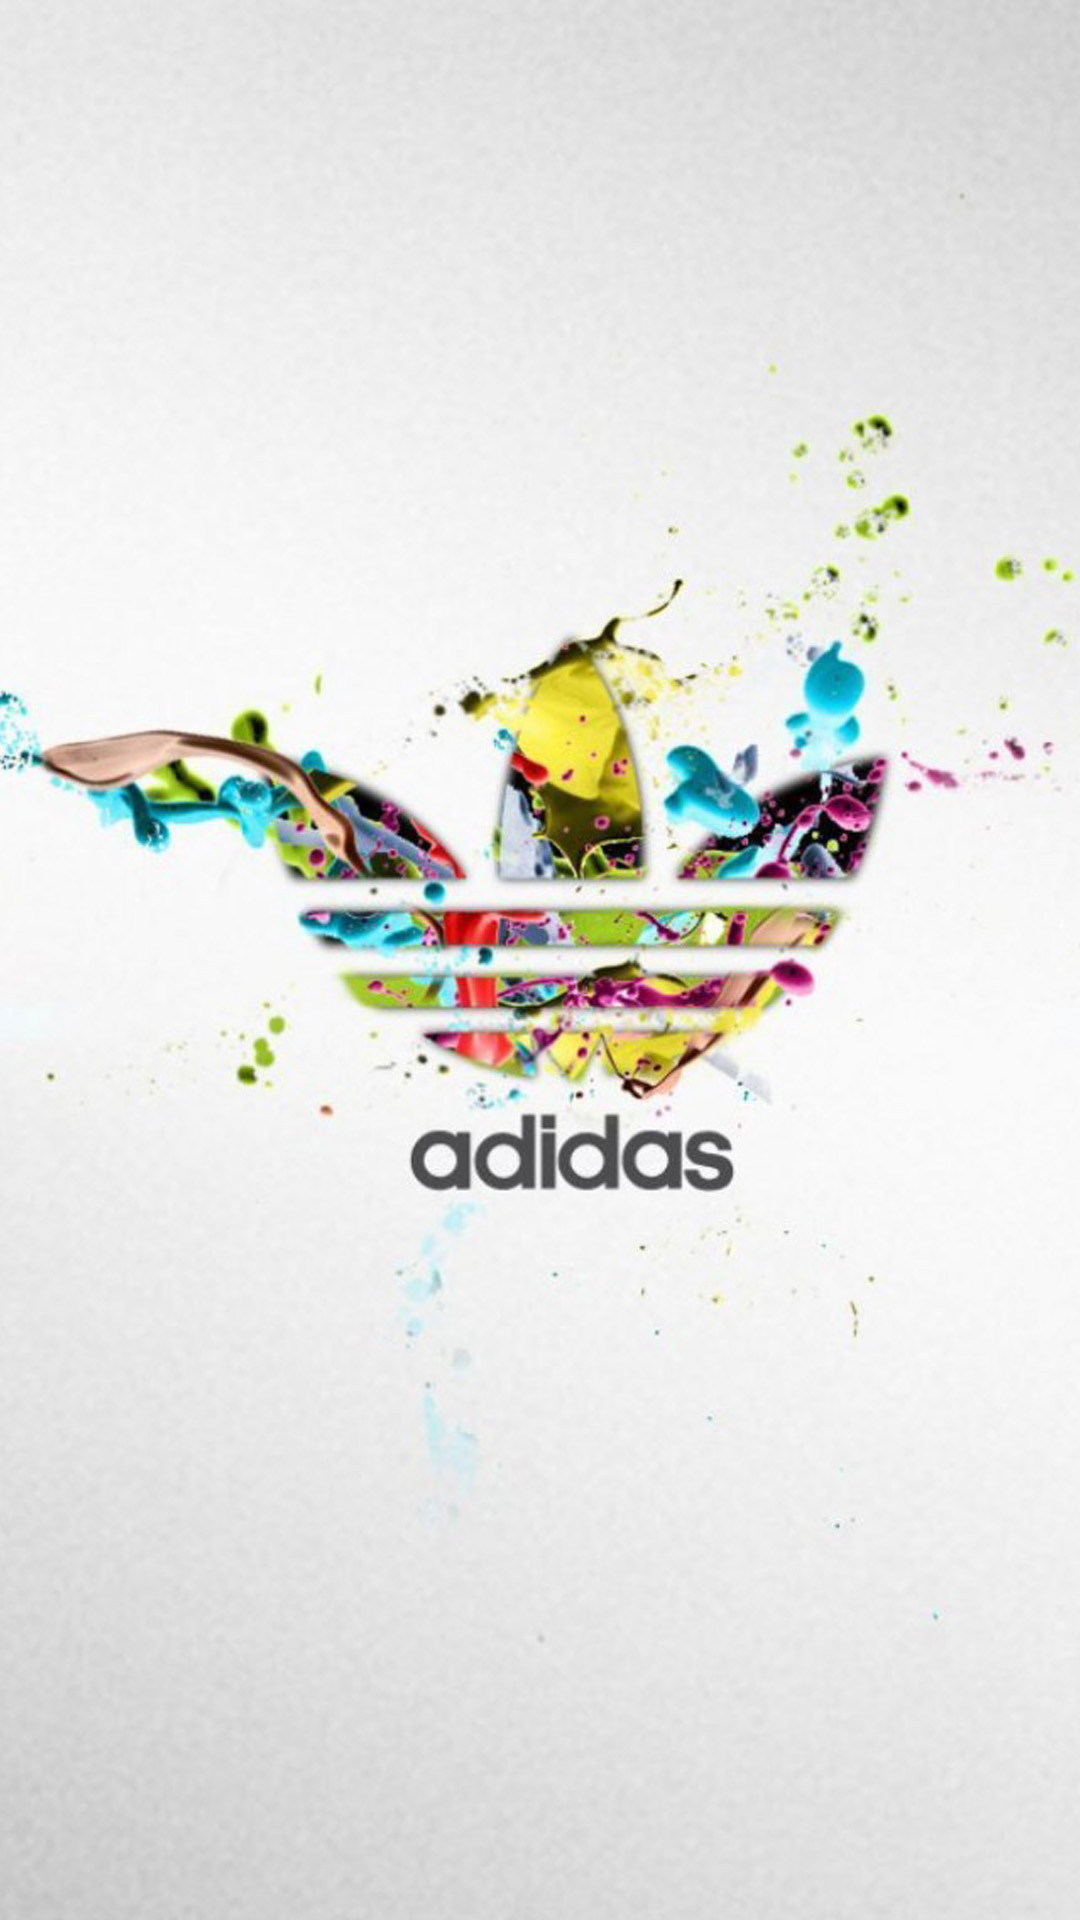 Adidas: Hãy tập luyện thể chất với sự tin tưởng đầy đủ với những sản phẩm tuyệt vời từ Adidas. Với bề mặt giày bền bỉ và thông thoáng, bạn có thể thoải mái di chuyển và tập luyện không giới hạn. Cùng với các sản phẩm quần áo thể thao thoải mái và tôn dáng, bạn sẽ không bị cản trở từ việc tập luyện. Hãy tham gia vào cuộc chơi với Adidas!